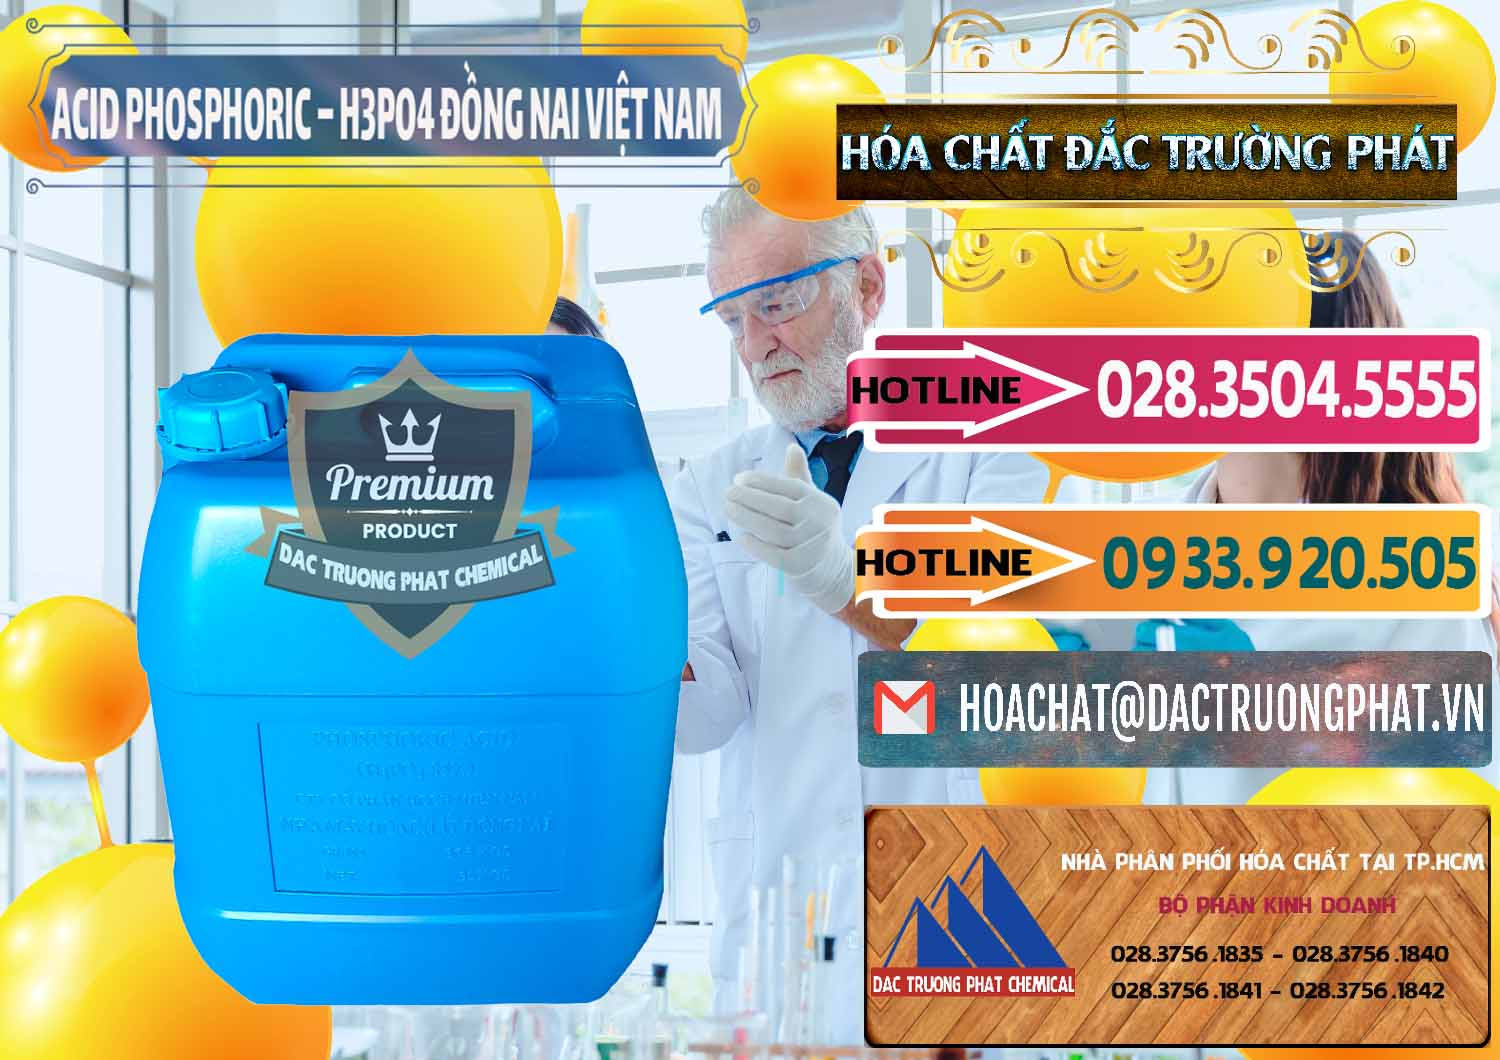 Chuyên cung cấp - bán Acid Phosphoric – Axit Phosphoric 85% Đồng Nai Việt Nam - 0183 - Cung cấp hóa chất tại TP.HCM - dactruongphat.vn